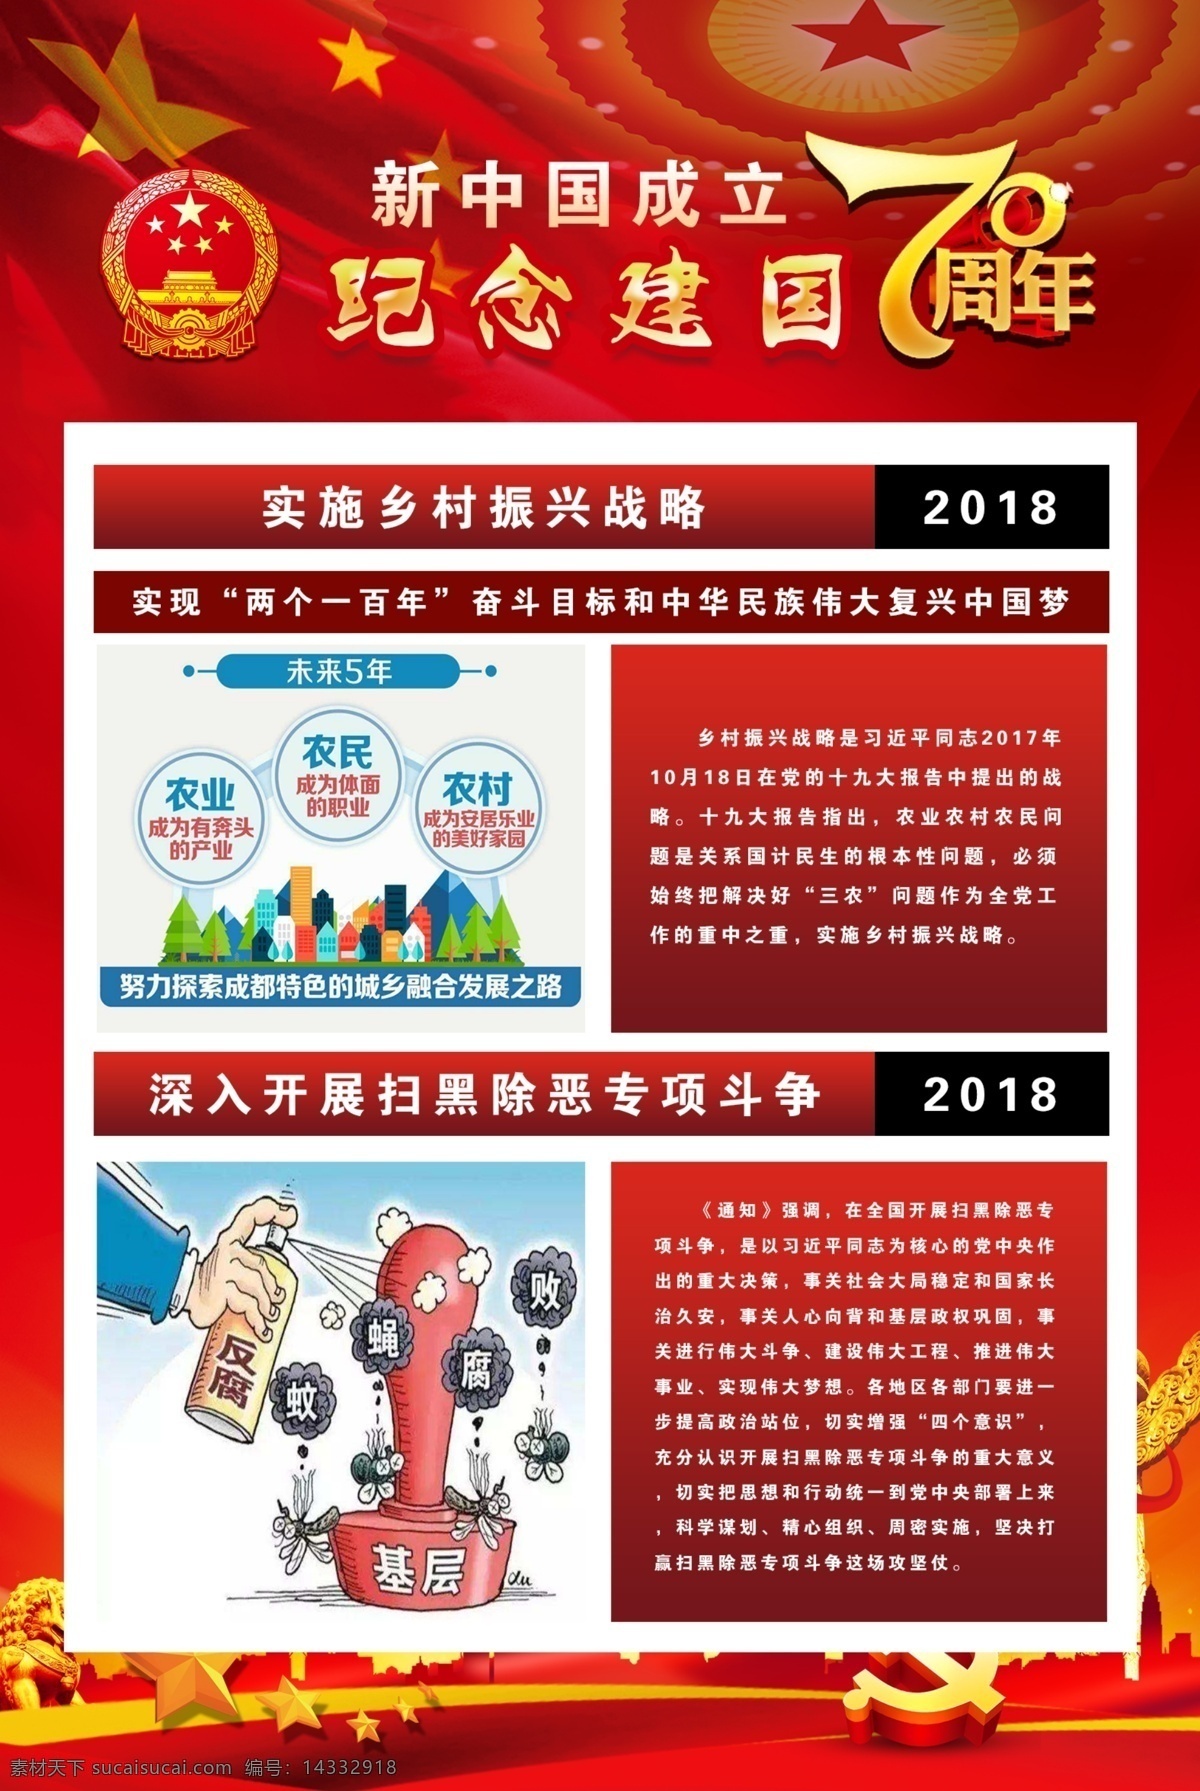 新中国 成立 周年 成立70周年 红色背景 纪念建国 70周年 18年 19年 文化艺术 传统文化